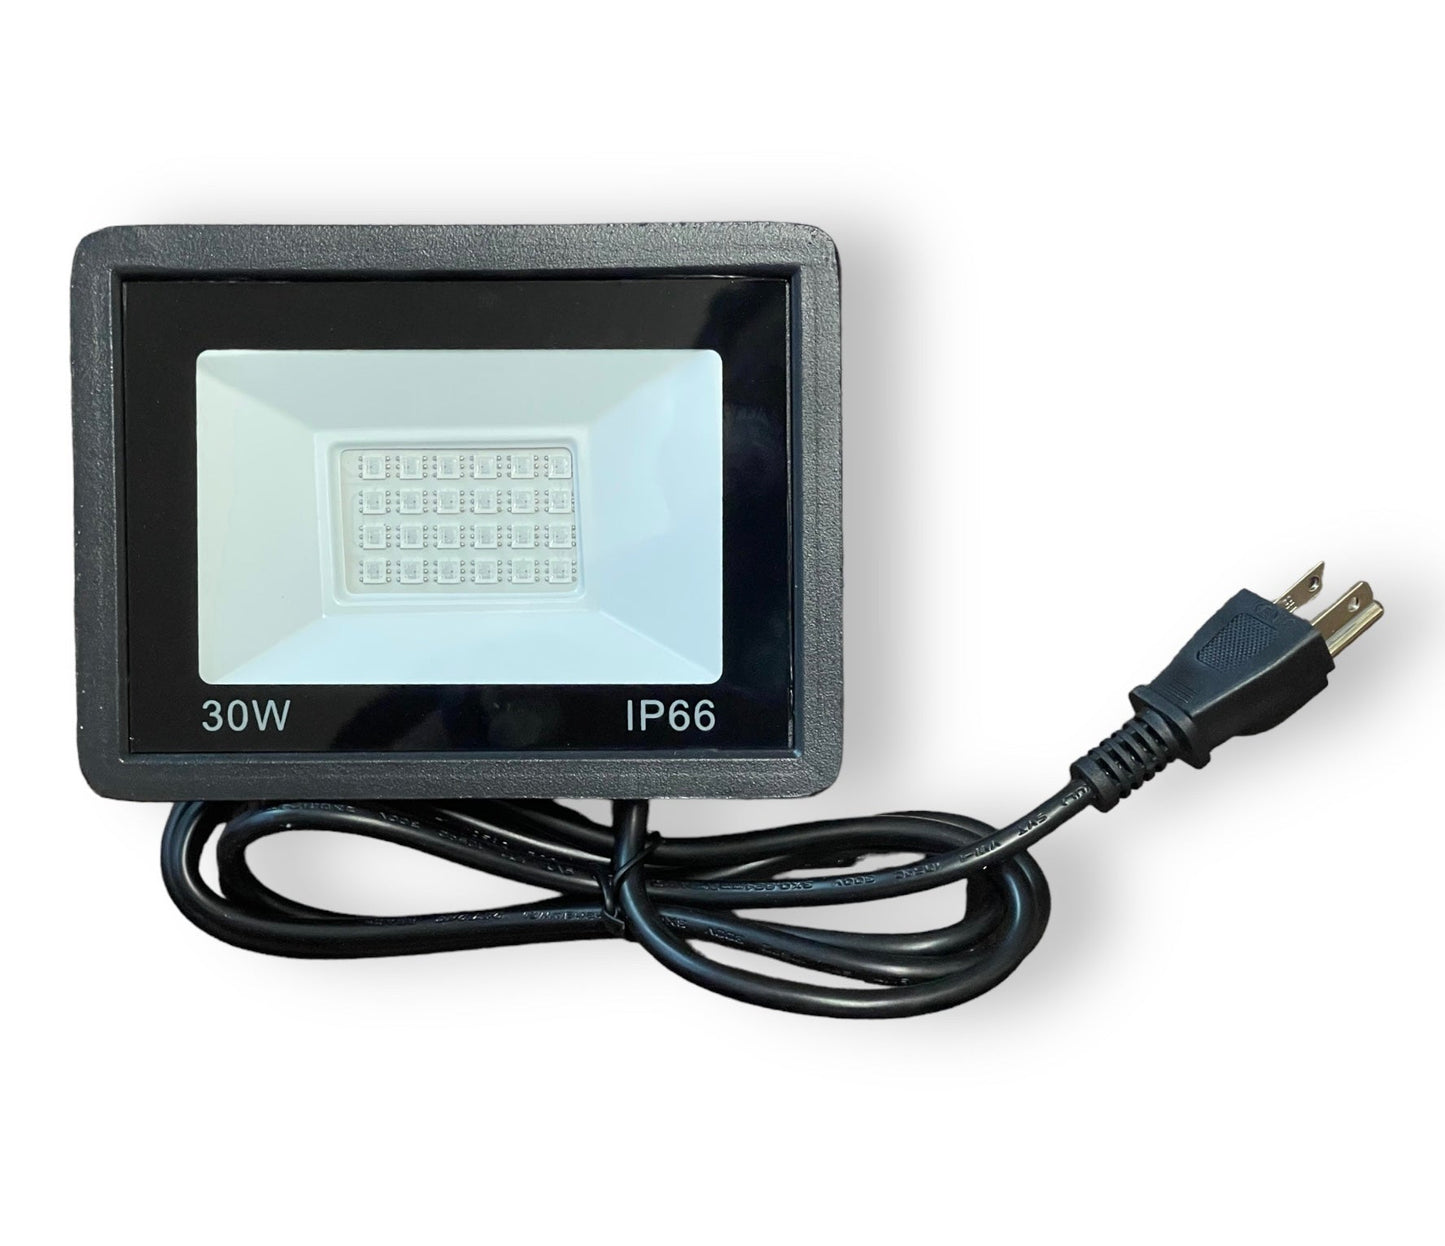 Proyector LED RGB de 30 W con control remoto por infrarrojos de 24 teclas IP66 50 000 horas